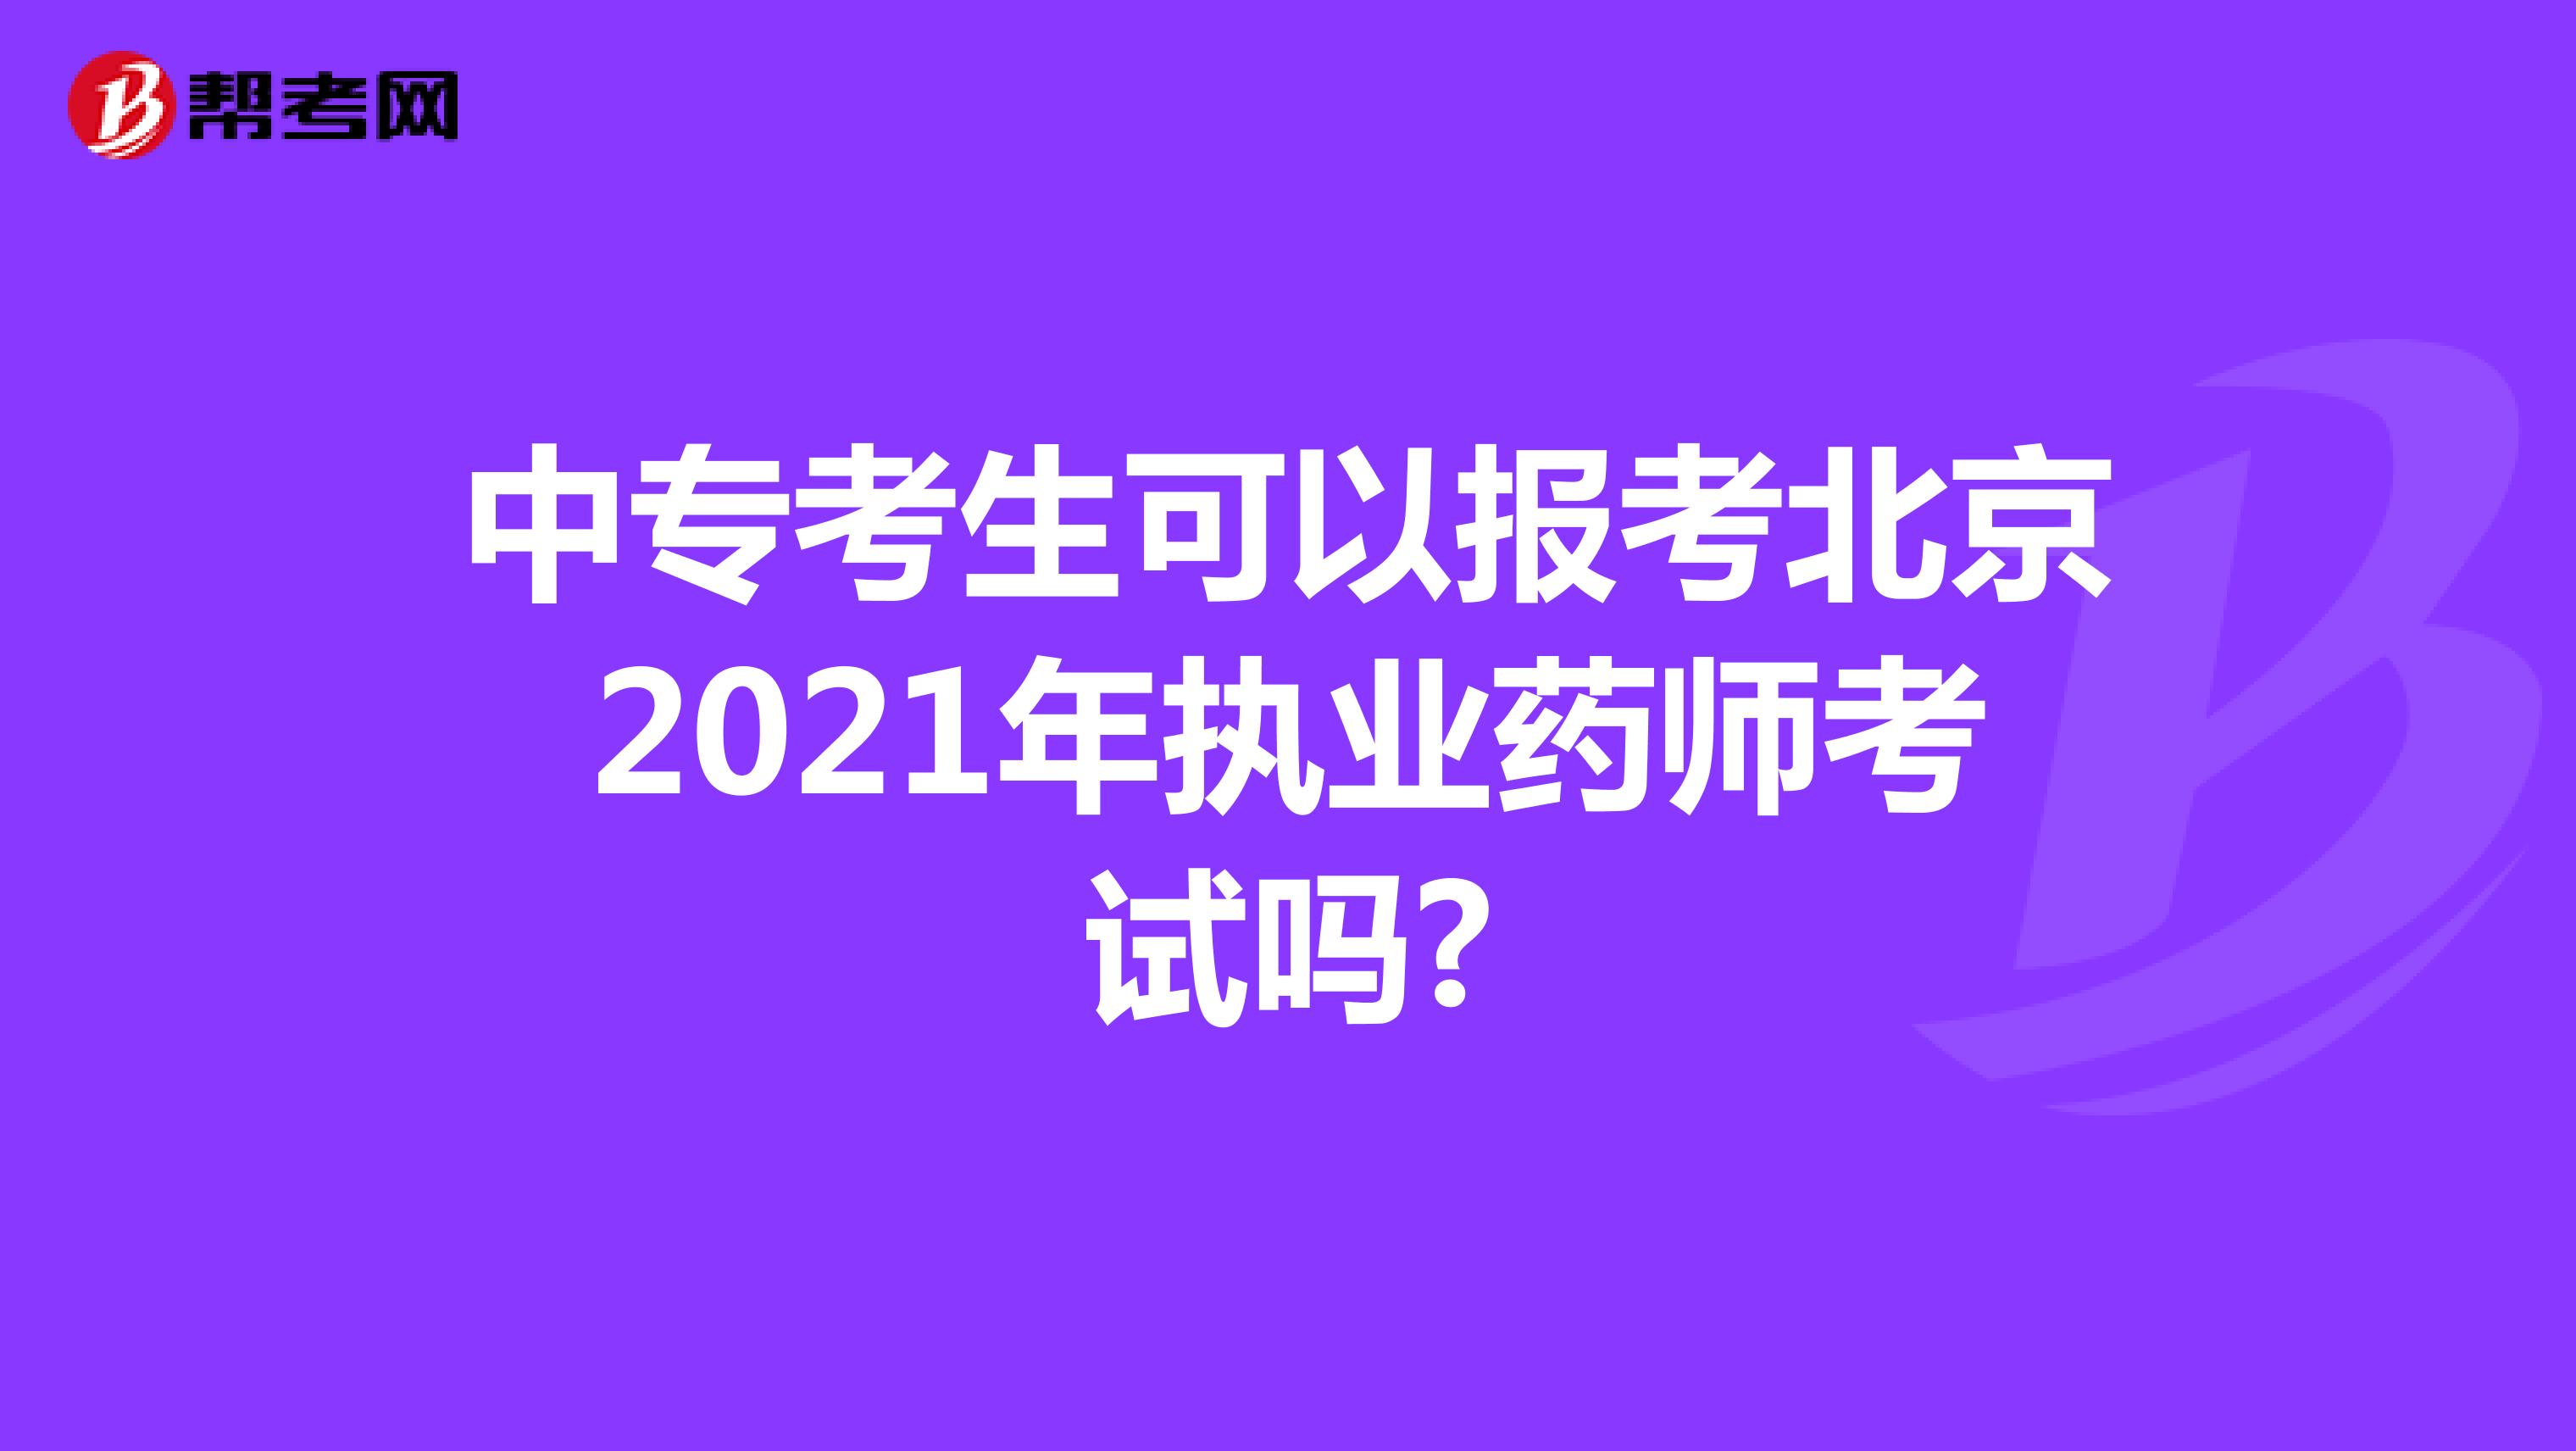 中专考生可以报考北京2021年执业药师考试吗?